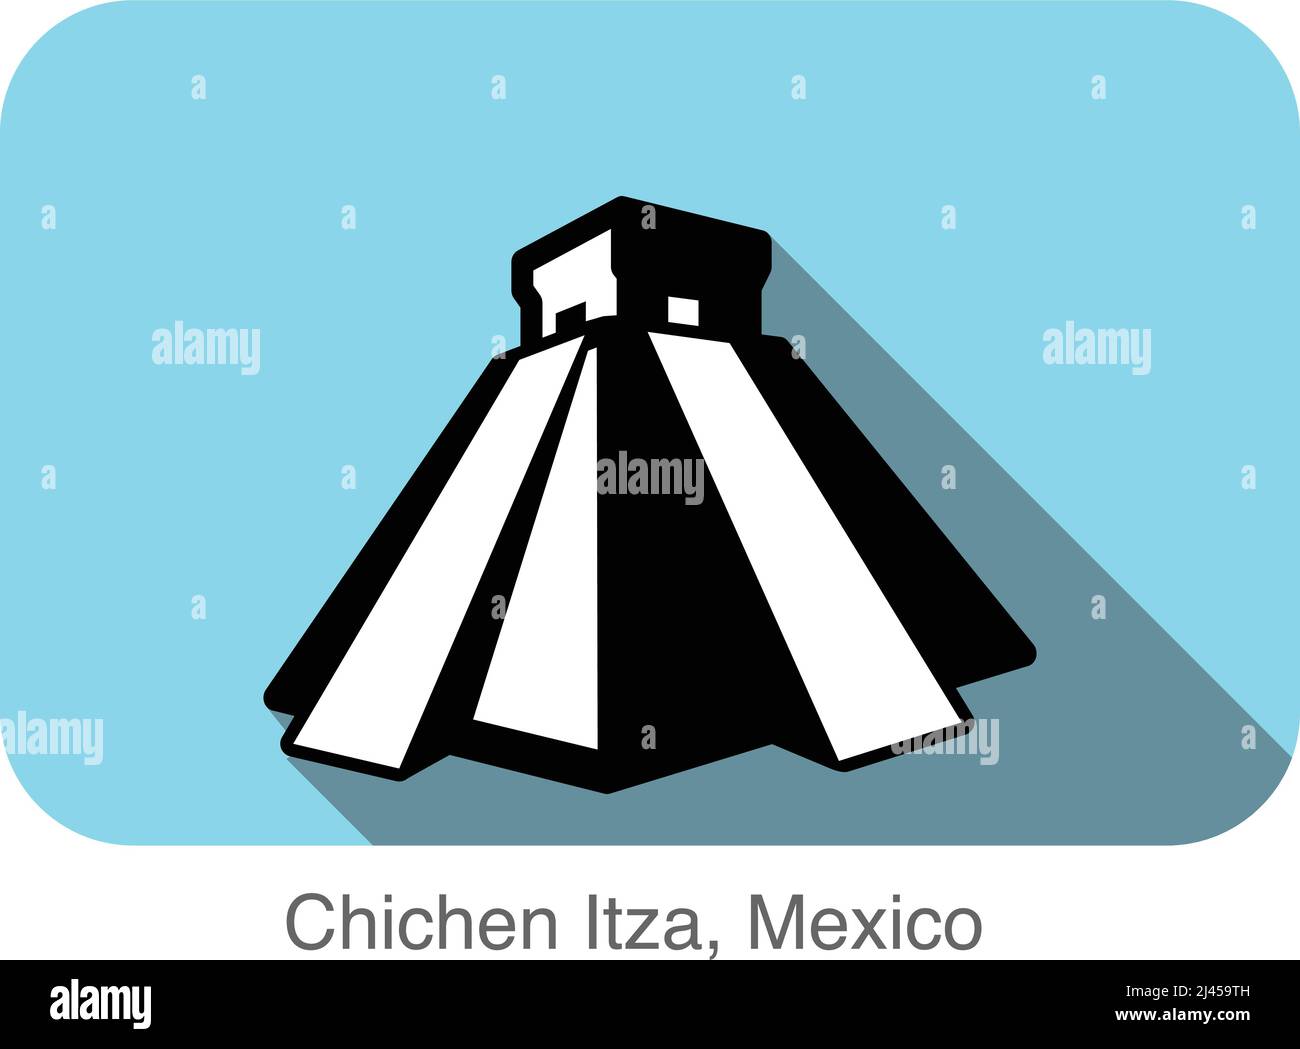 Chichen Itza,Mexico, famous landmark flat icon, Famous scenic spot Stock Vector